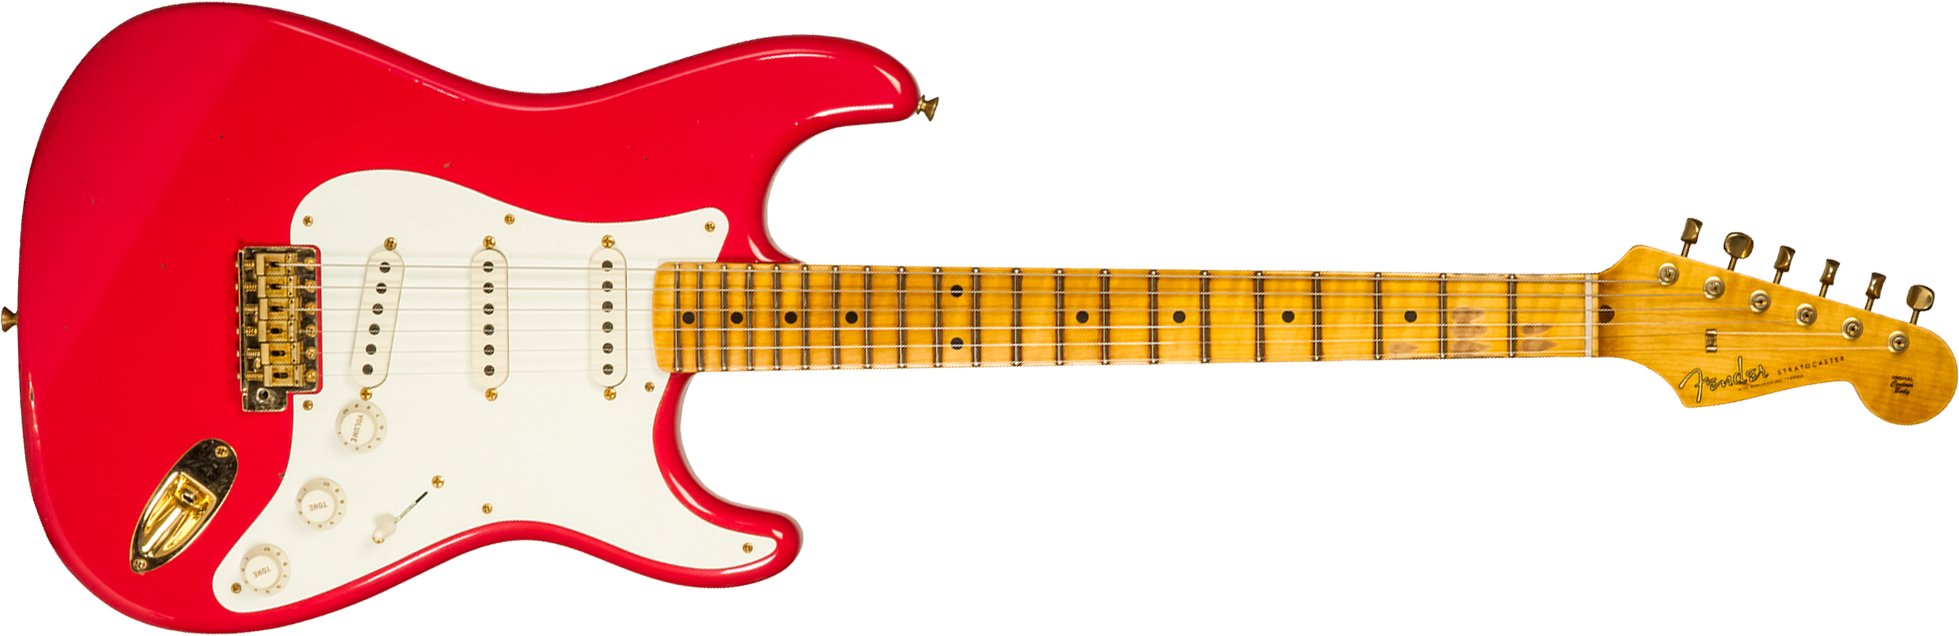 Fender Custom Shop Strat 1956 3s Trem Mn #r130433 - Journeyman Relic Fiesta Red - Guitare Électrique Forme Str - Main picture